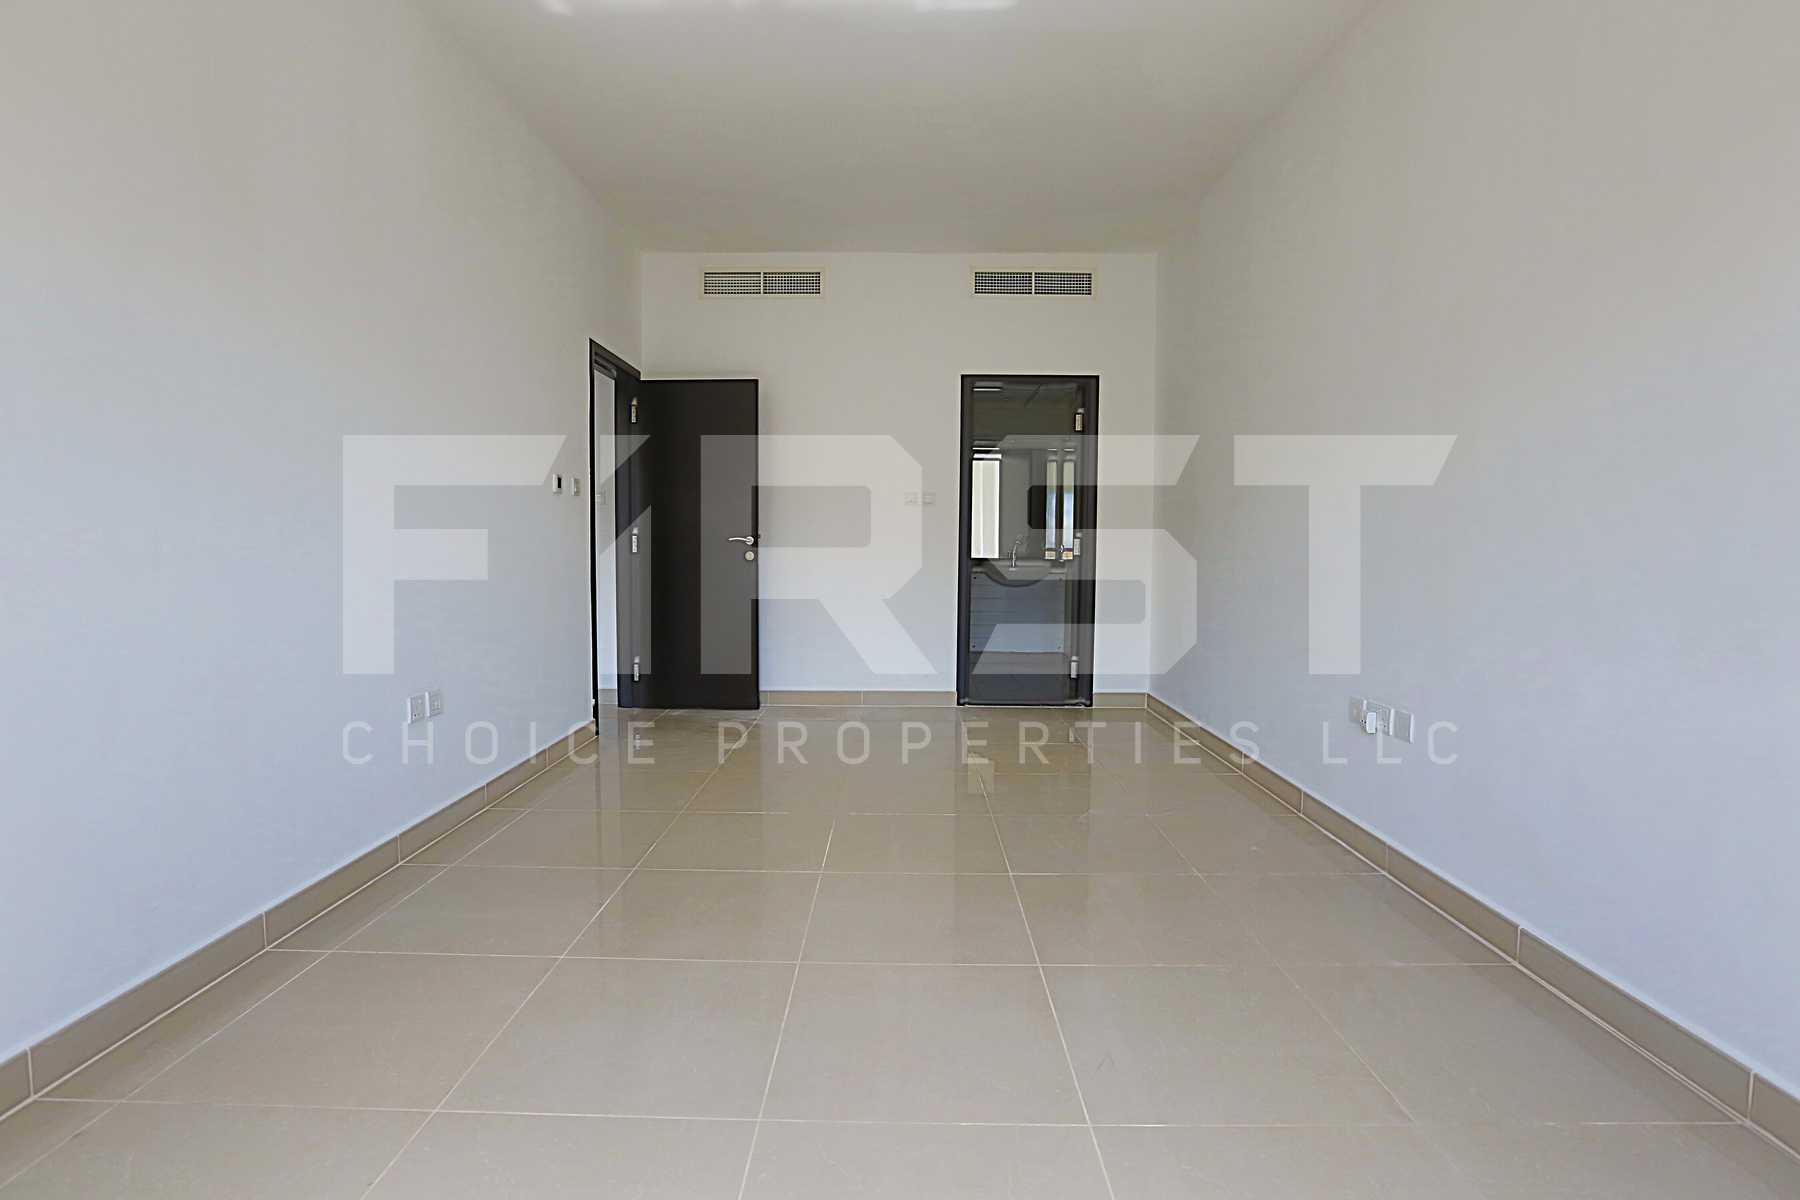 Internal Photo of 2 Bedroom Apartment Type B in Al Reef Downtown Al Reef Abu Dhabi UAE 114 sq.m 1227 (15).jpg